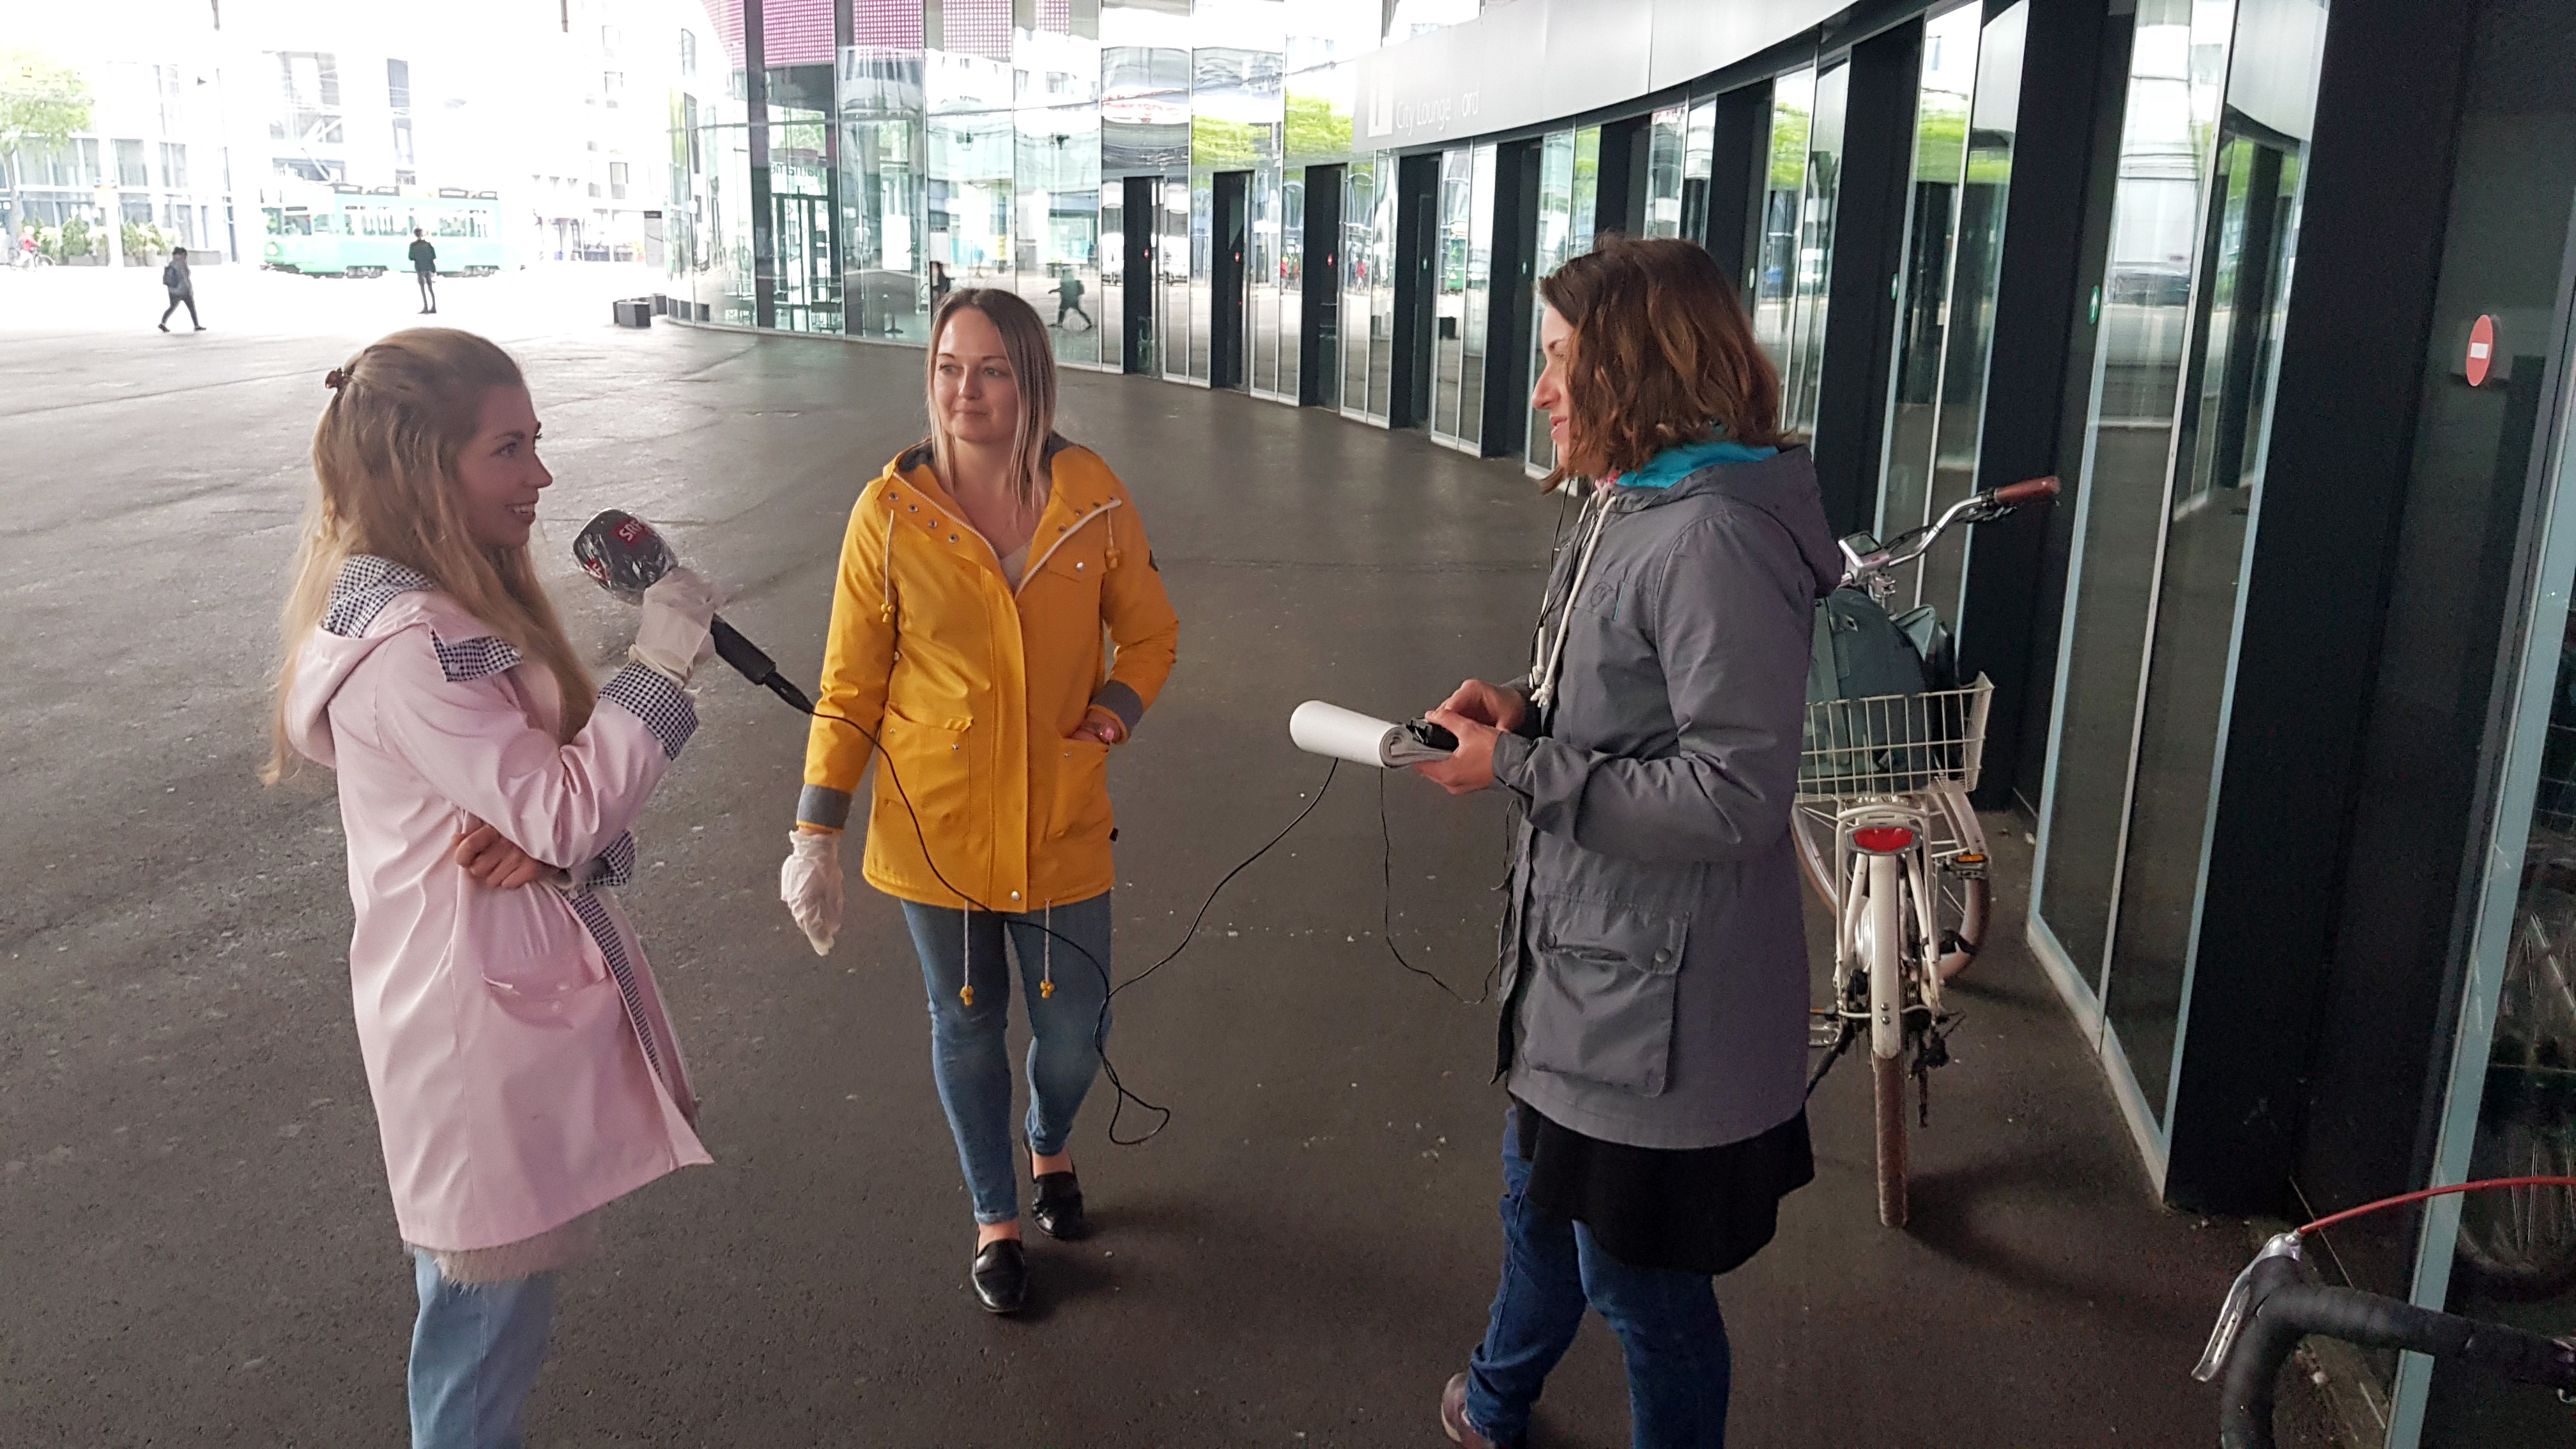 SRF-Korrespondentin Marlène Sandrin (rechts) befragt die Studierenden Anne Upphoff (Mitte) und Lioba Badenhorst (links) über ihre Erfahrungen in der Obdachlosenhilfe. (© Matthias Drilling)